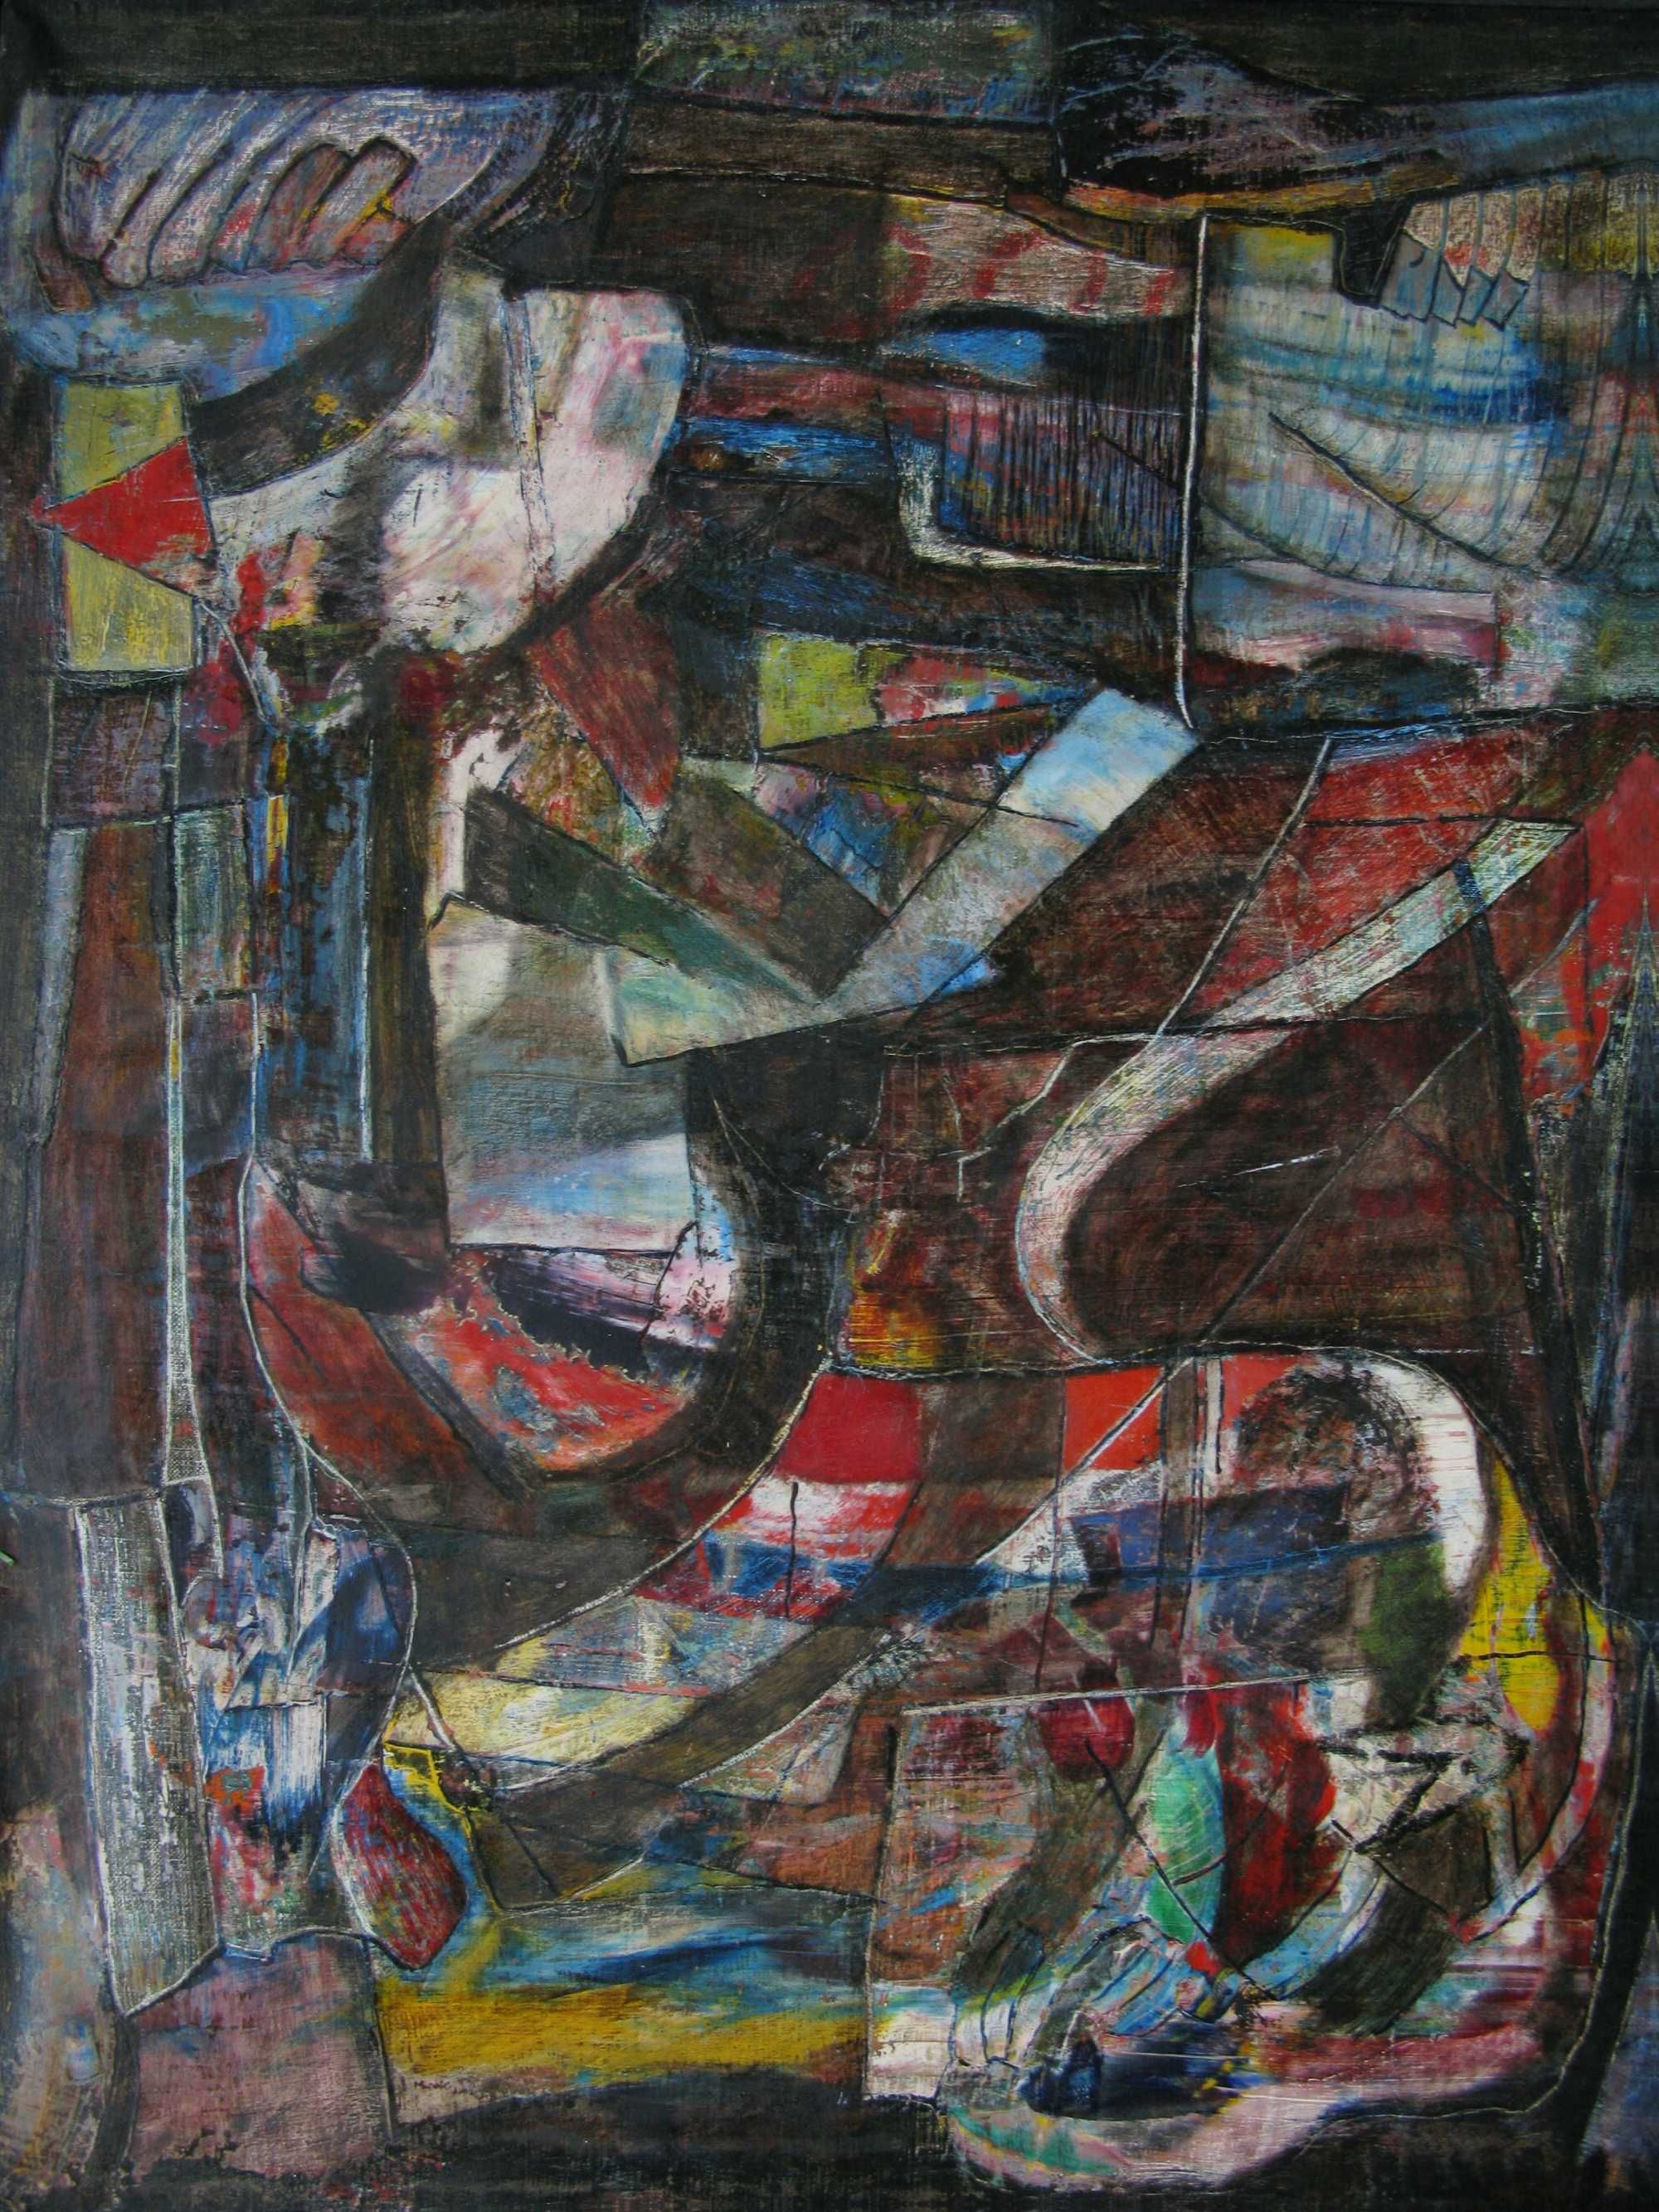 Obraz abstrakcyjny - "Kogut", olej na płótnie, wymiary 50 x 60 cm